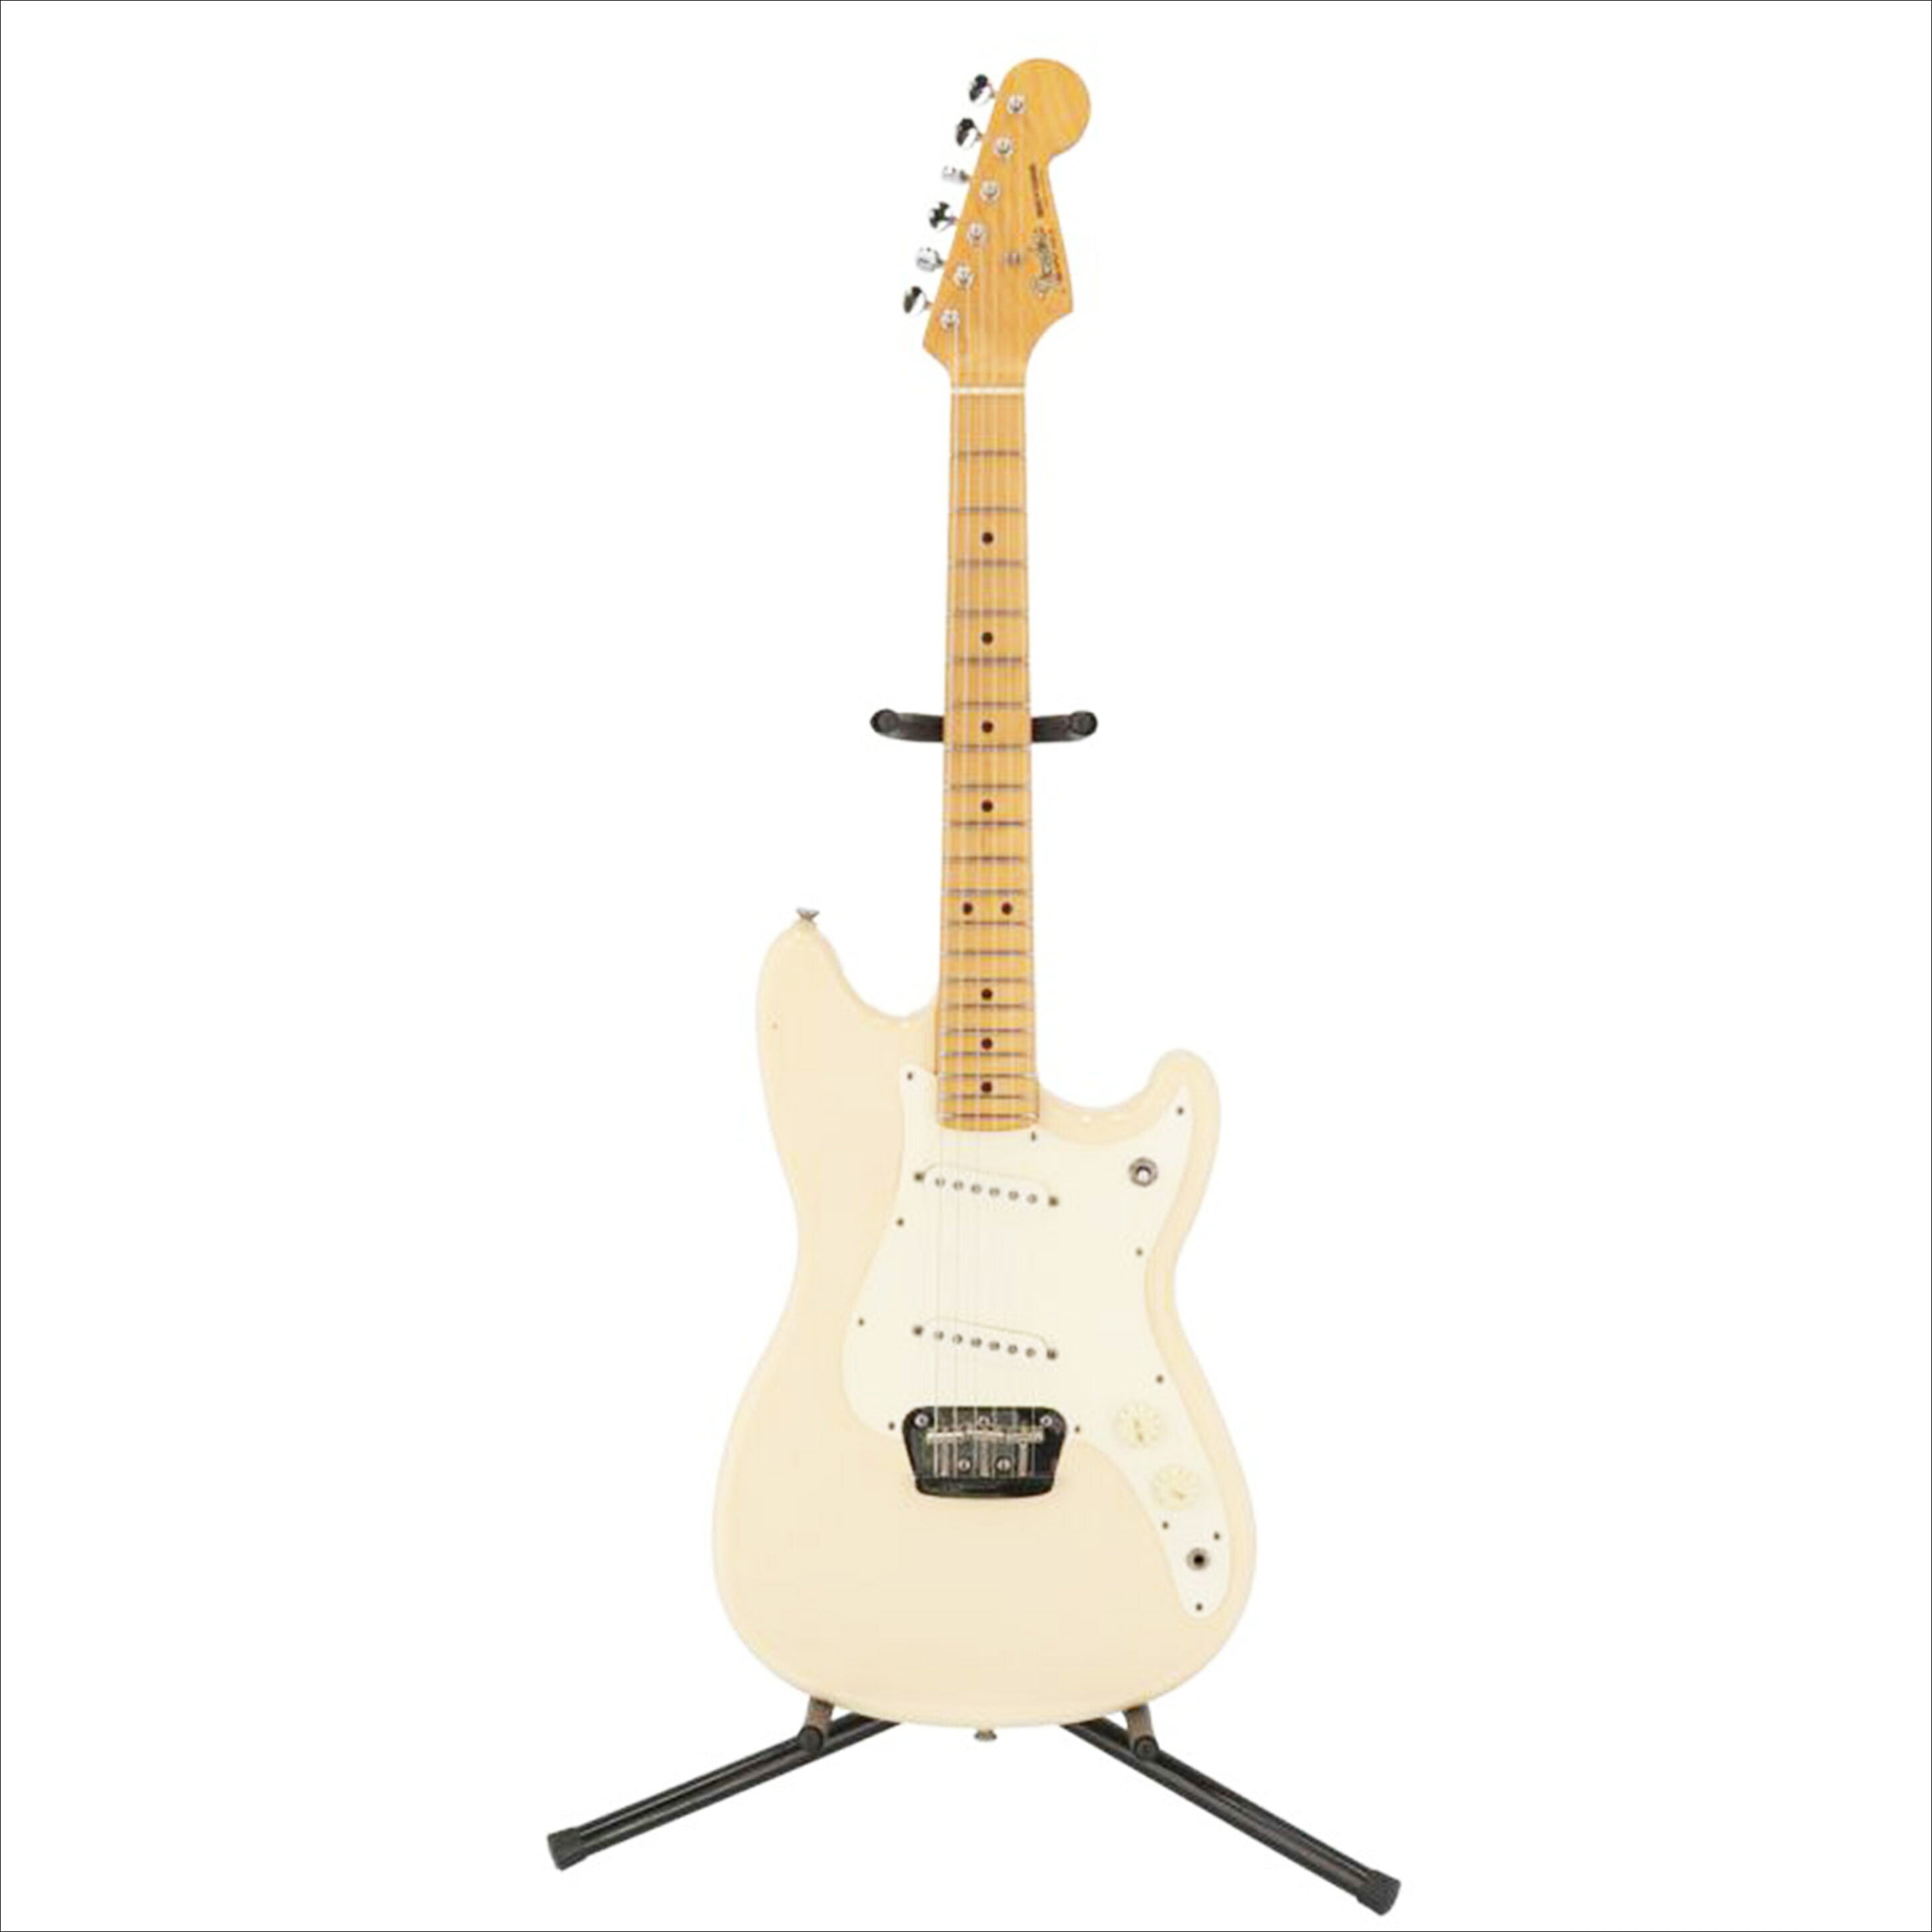 【割引特価】Fender Mexico フェンダー メキシコ エレキギター Stratocaster フェンダー